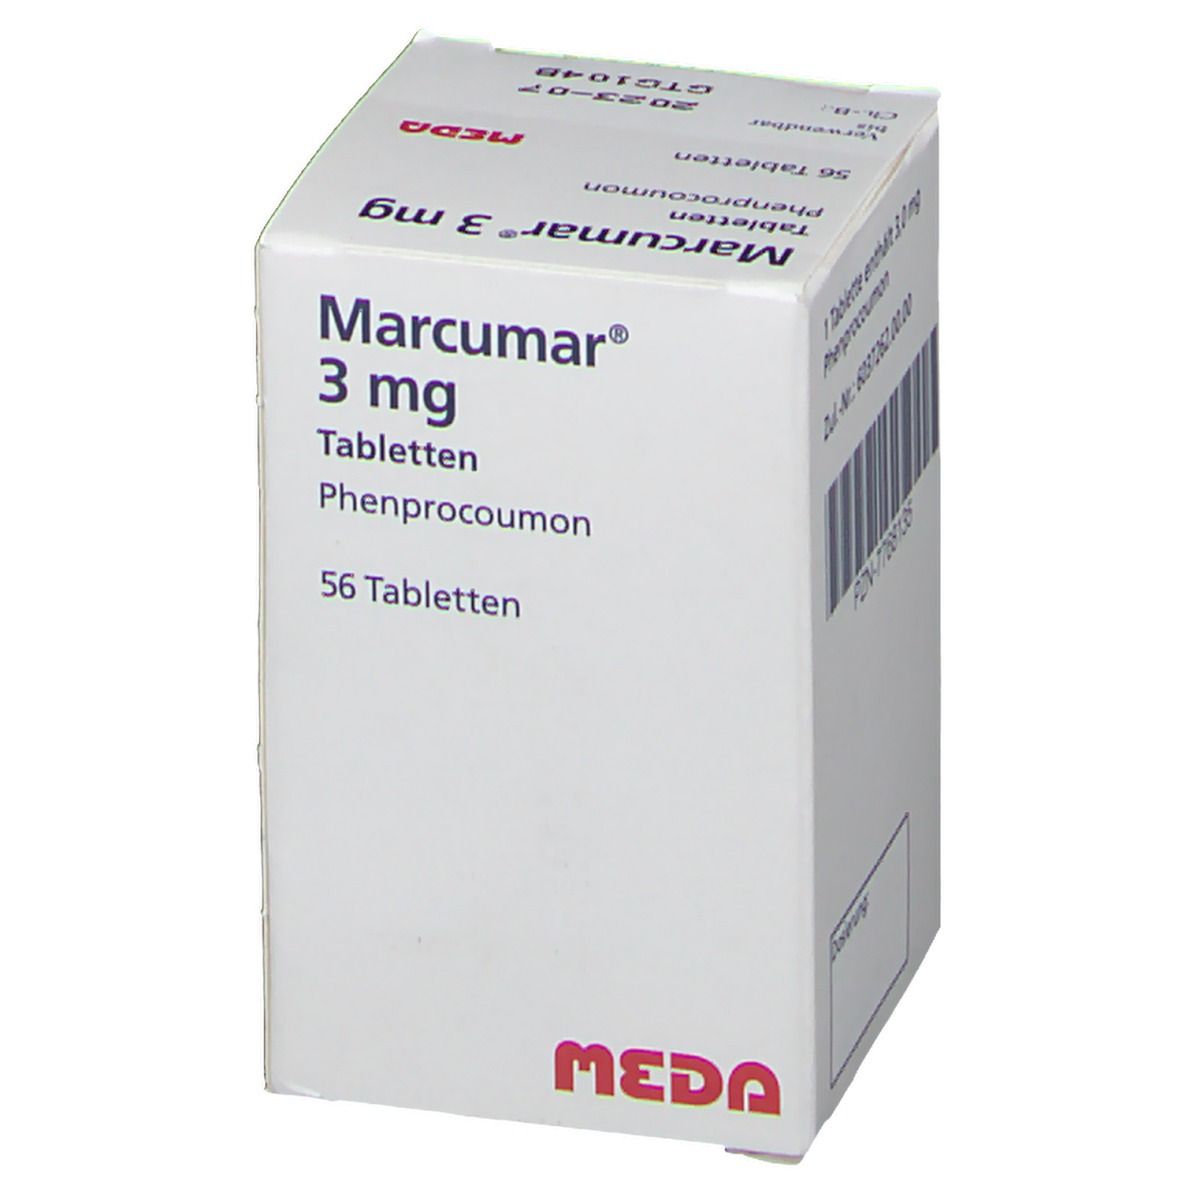 Marcumar® 3 mg